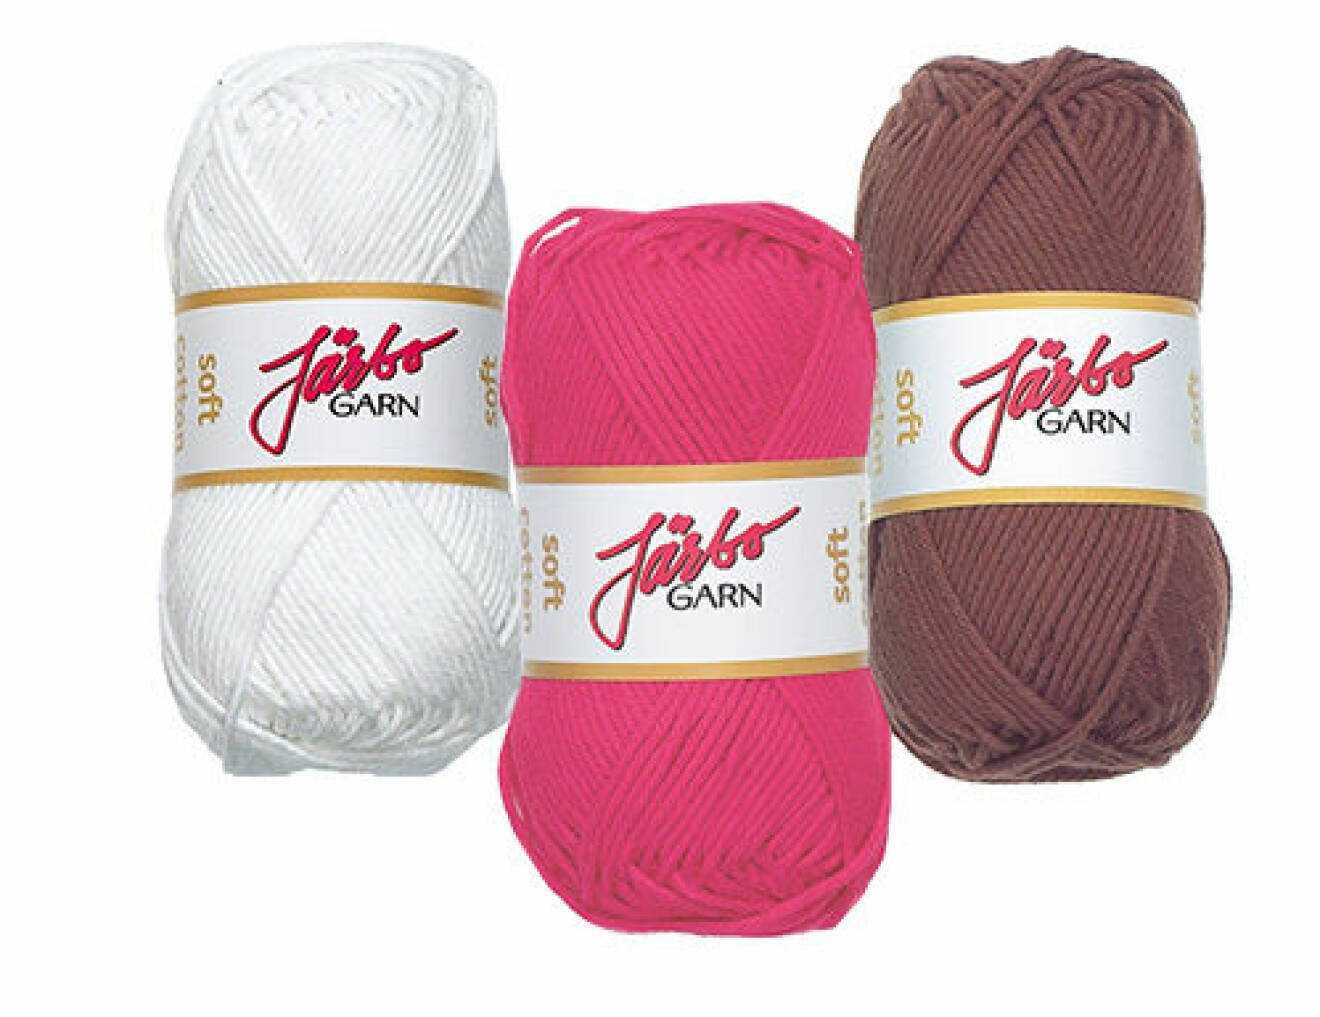 Virkgarn Soft Cotton i bomull från Järbo Garn